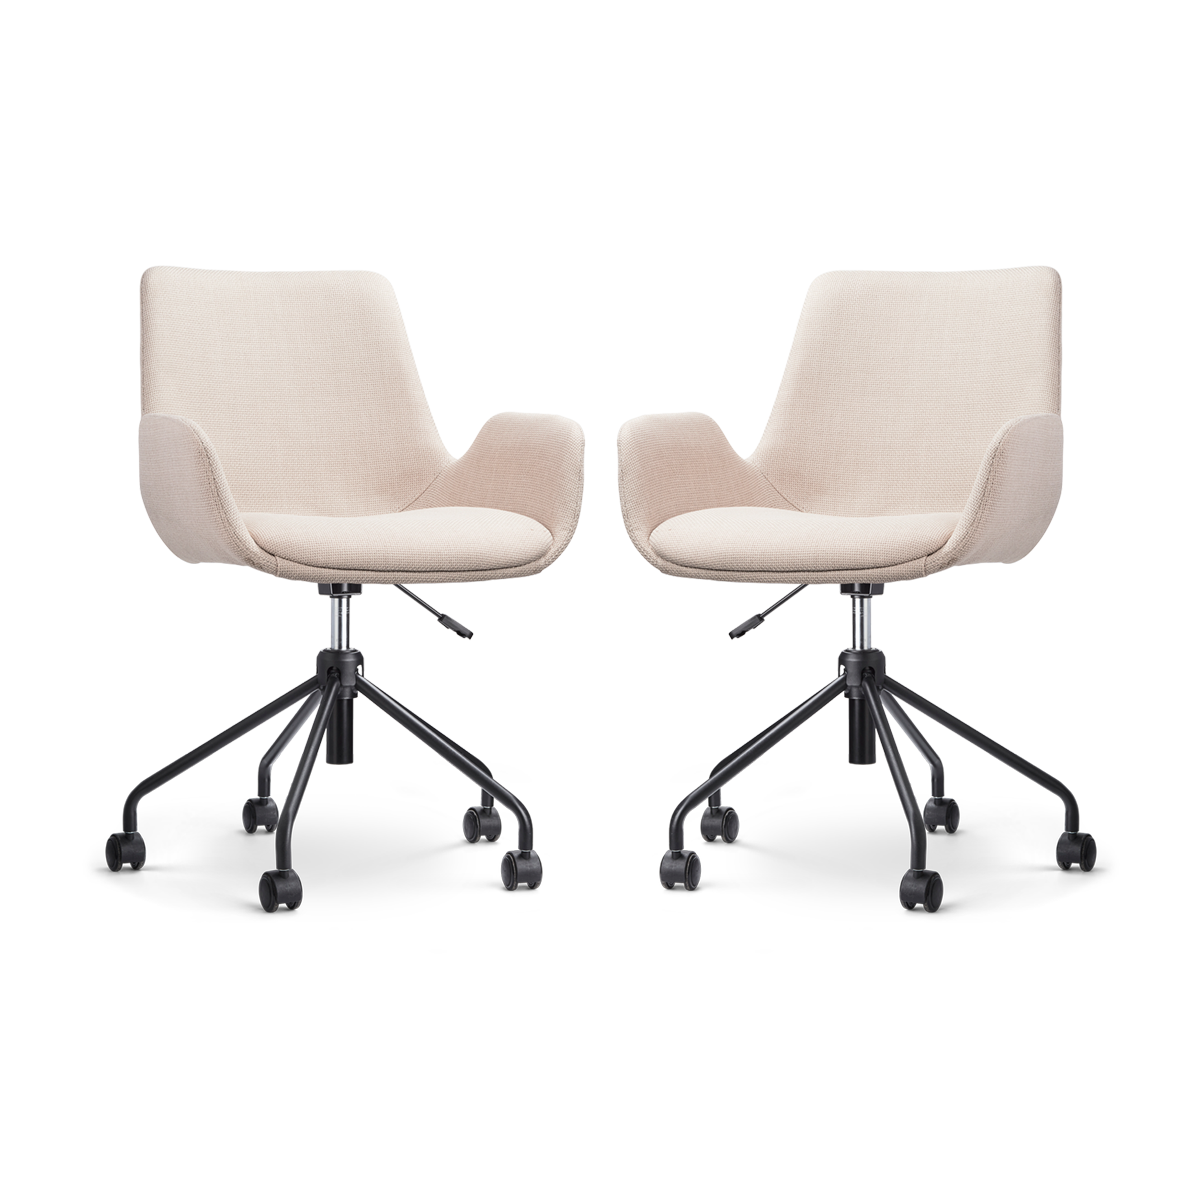 Nout-Eef bureaustoel beige - zwart onderstel - set van 2